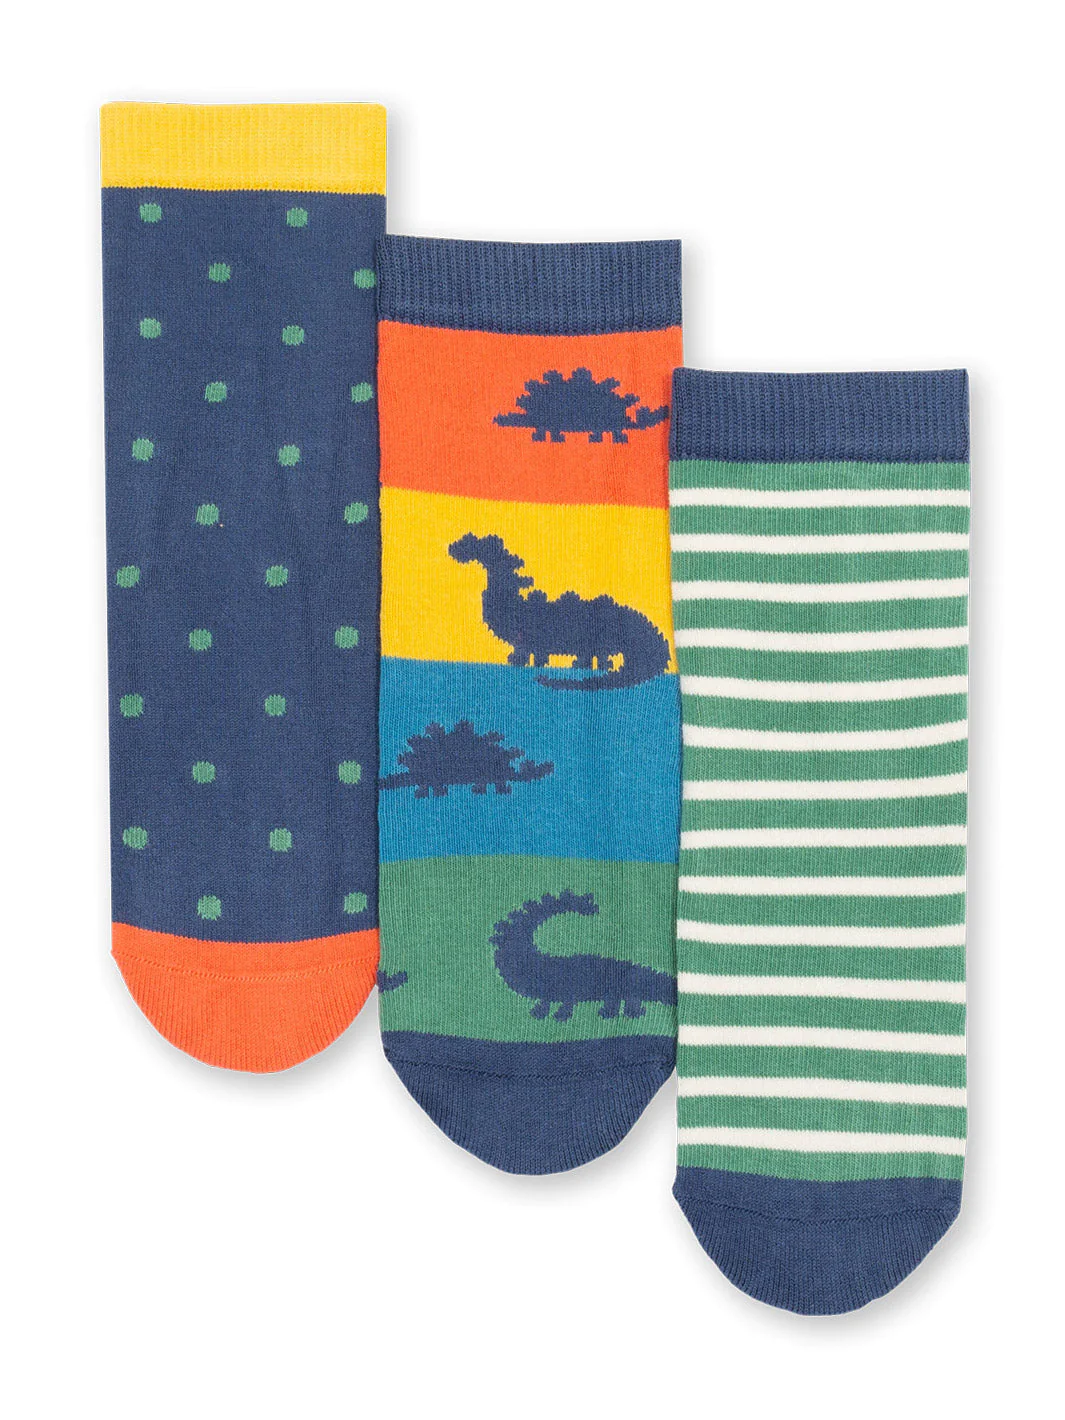 Dino Socks by Kite